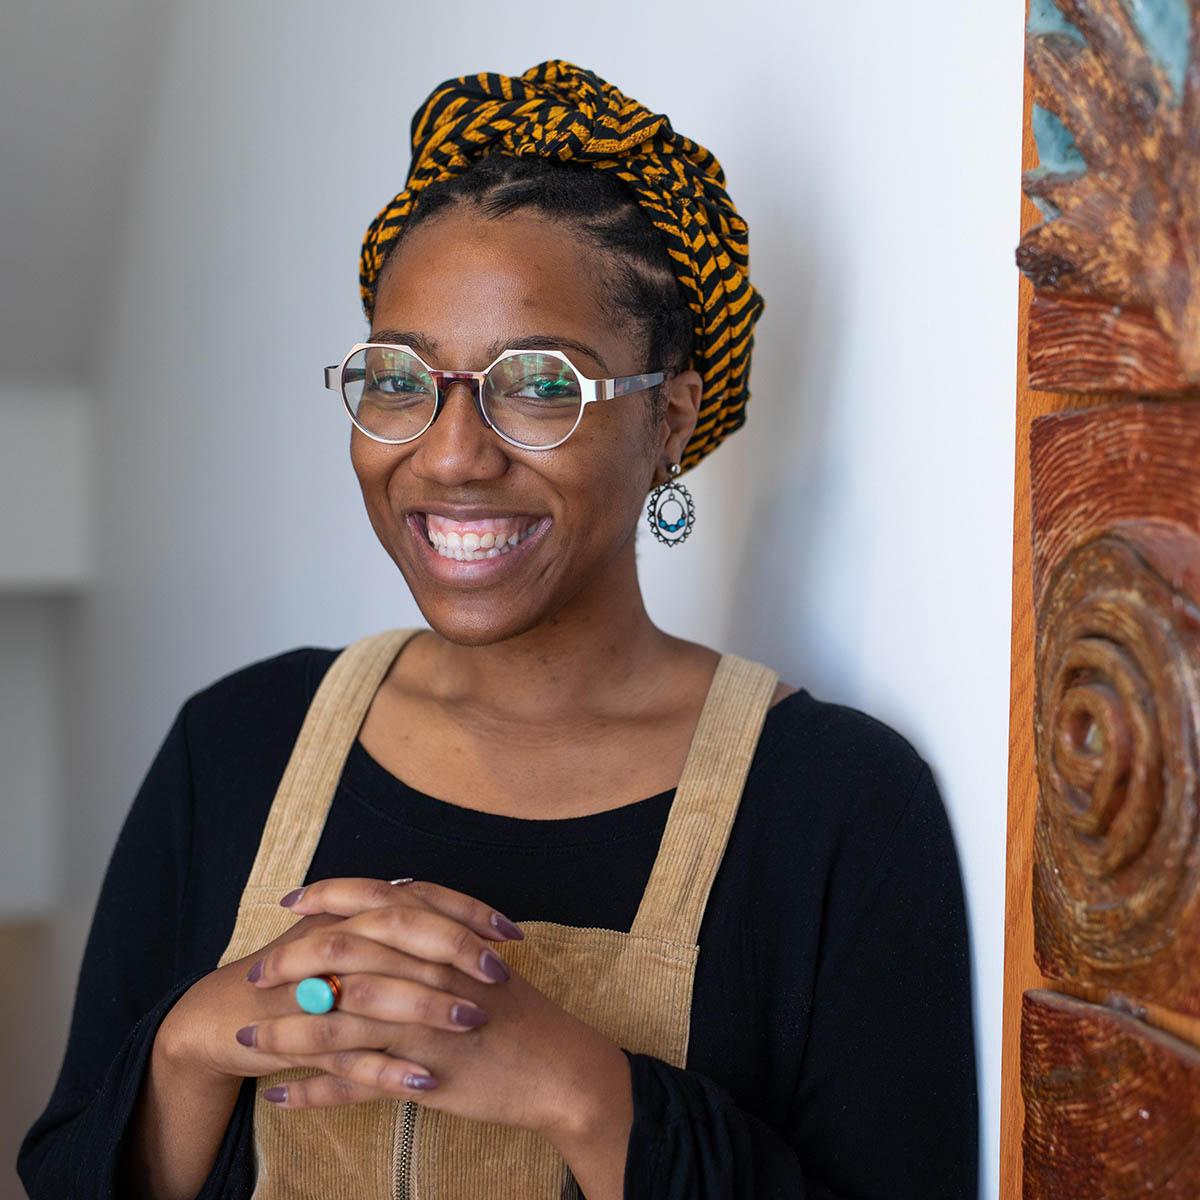 Ciera Marie Young摄, 戴六角形眼镜的黑人妇女, 在一幅彩色的画前微笑